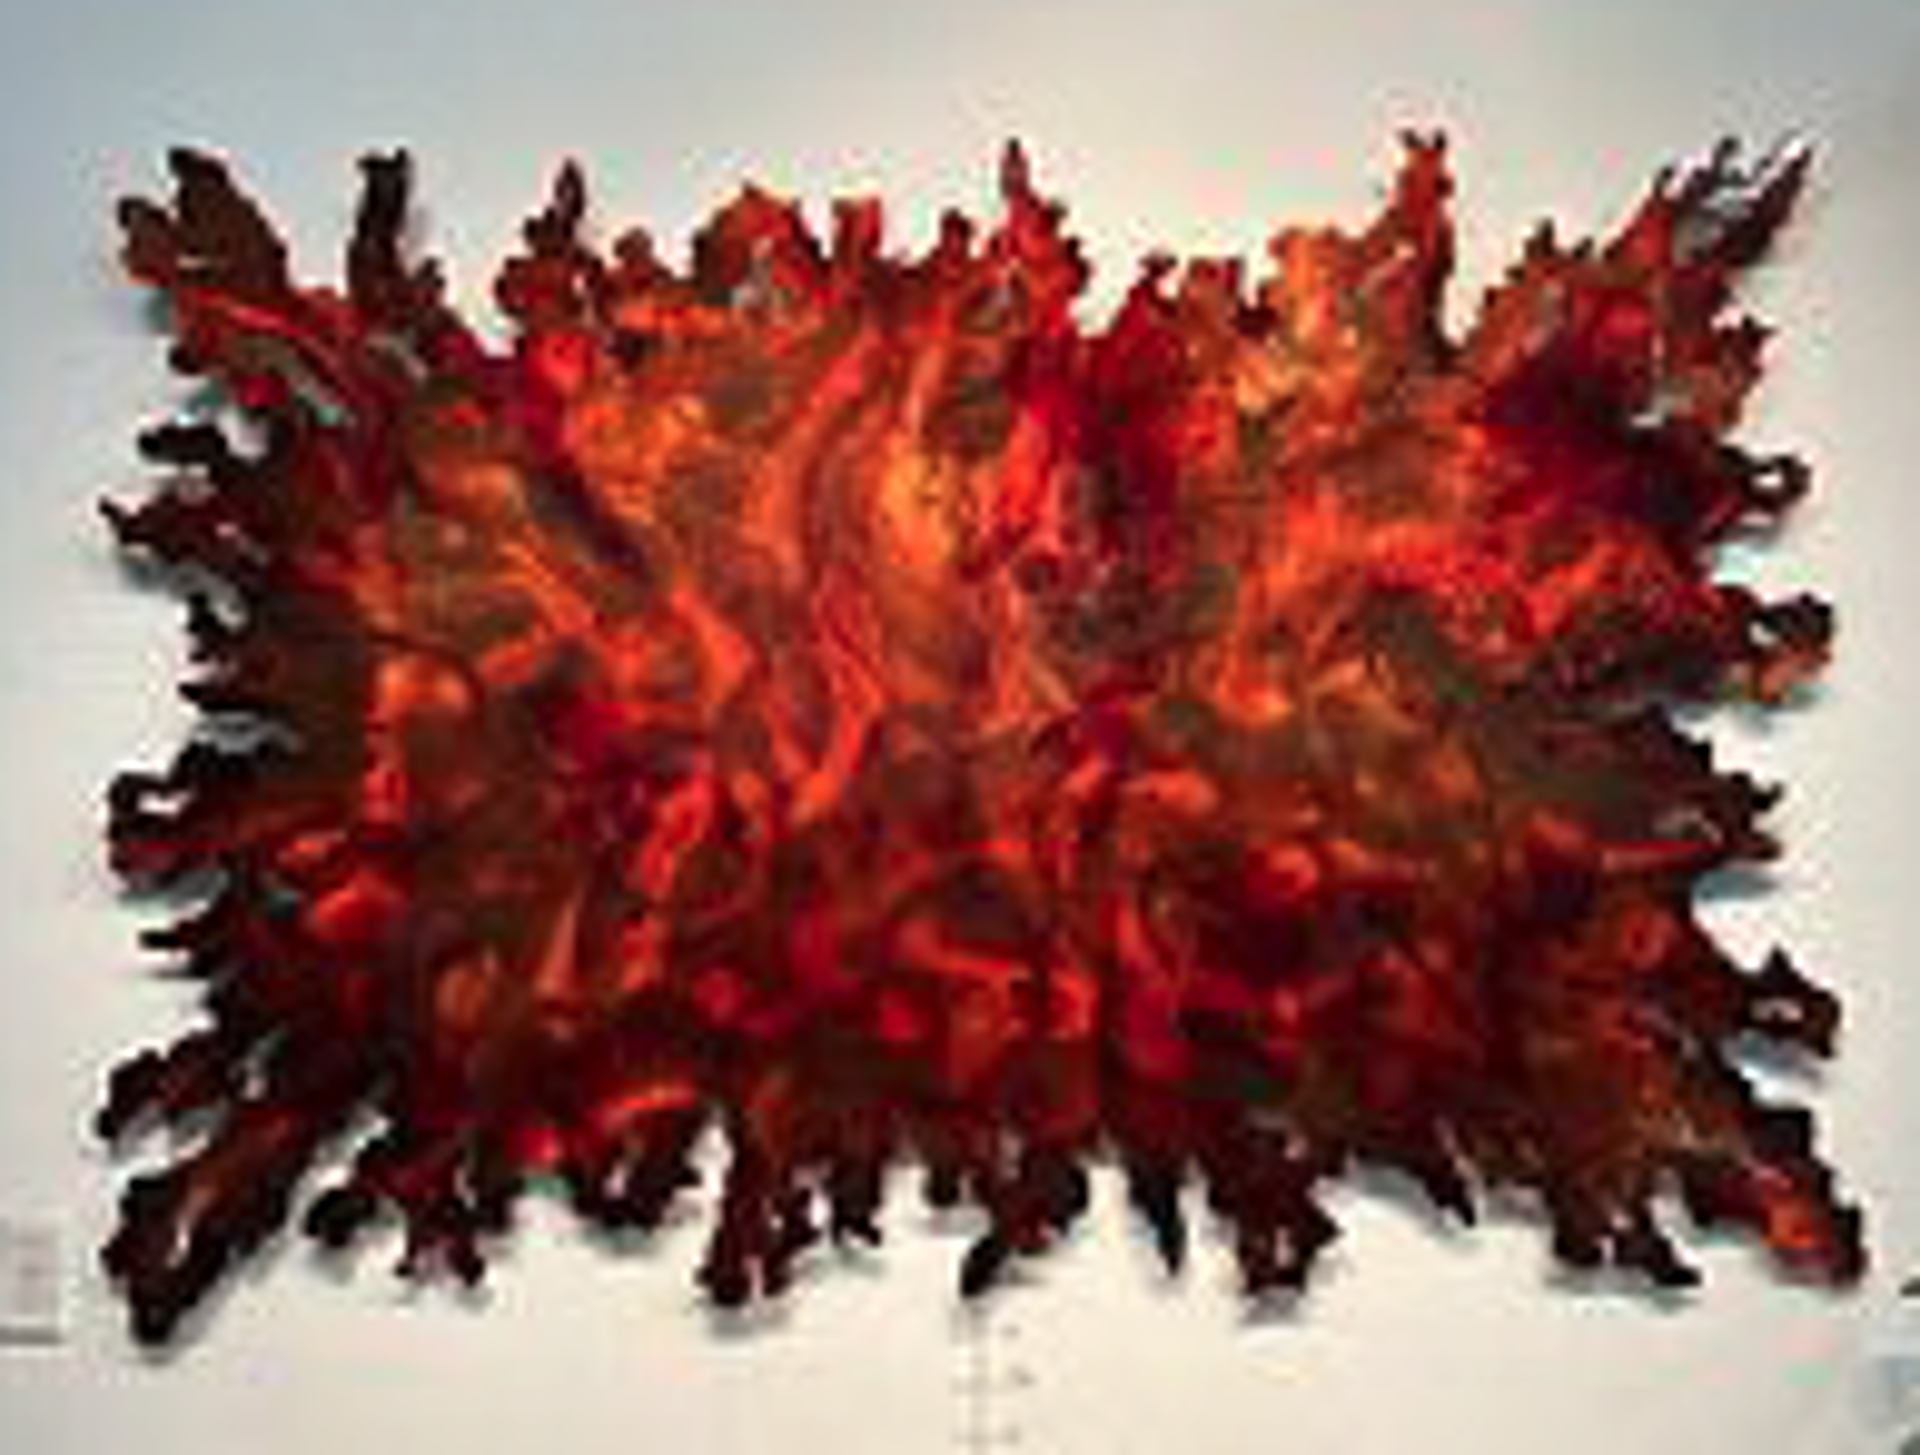 King Fire Tornado by Jeff Vermeeren